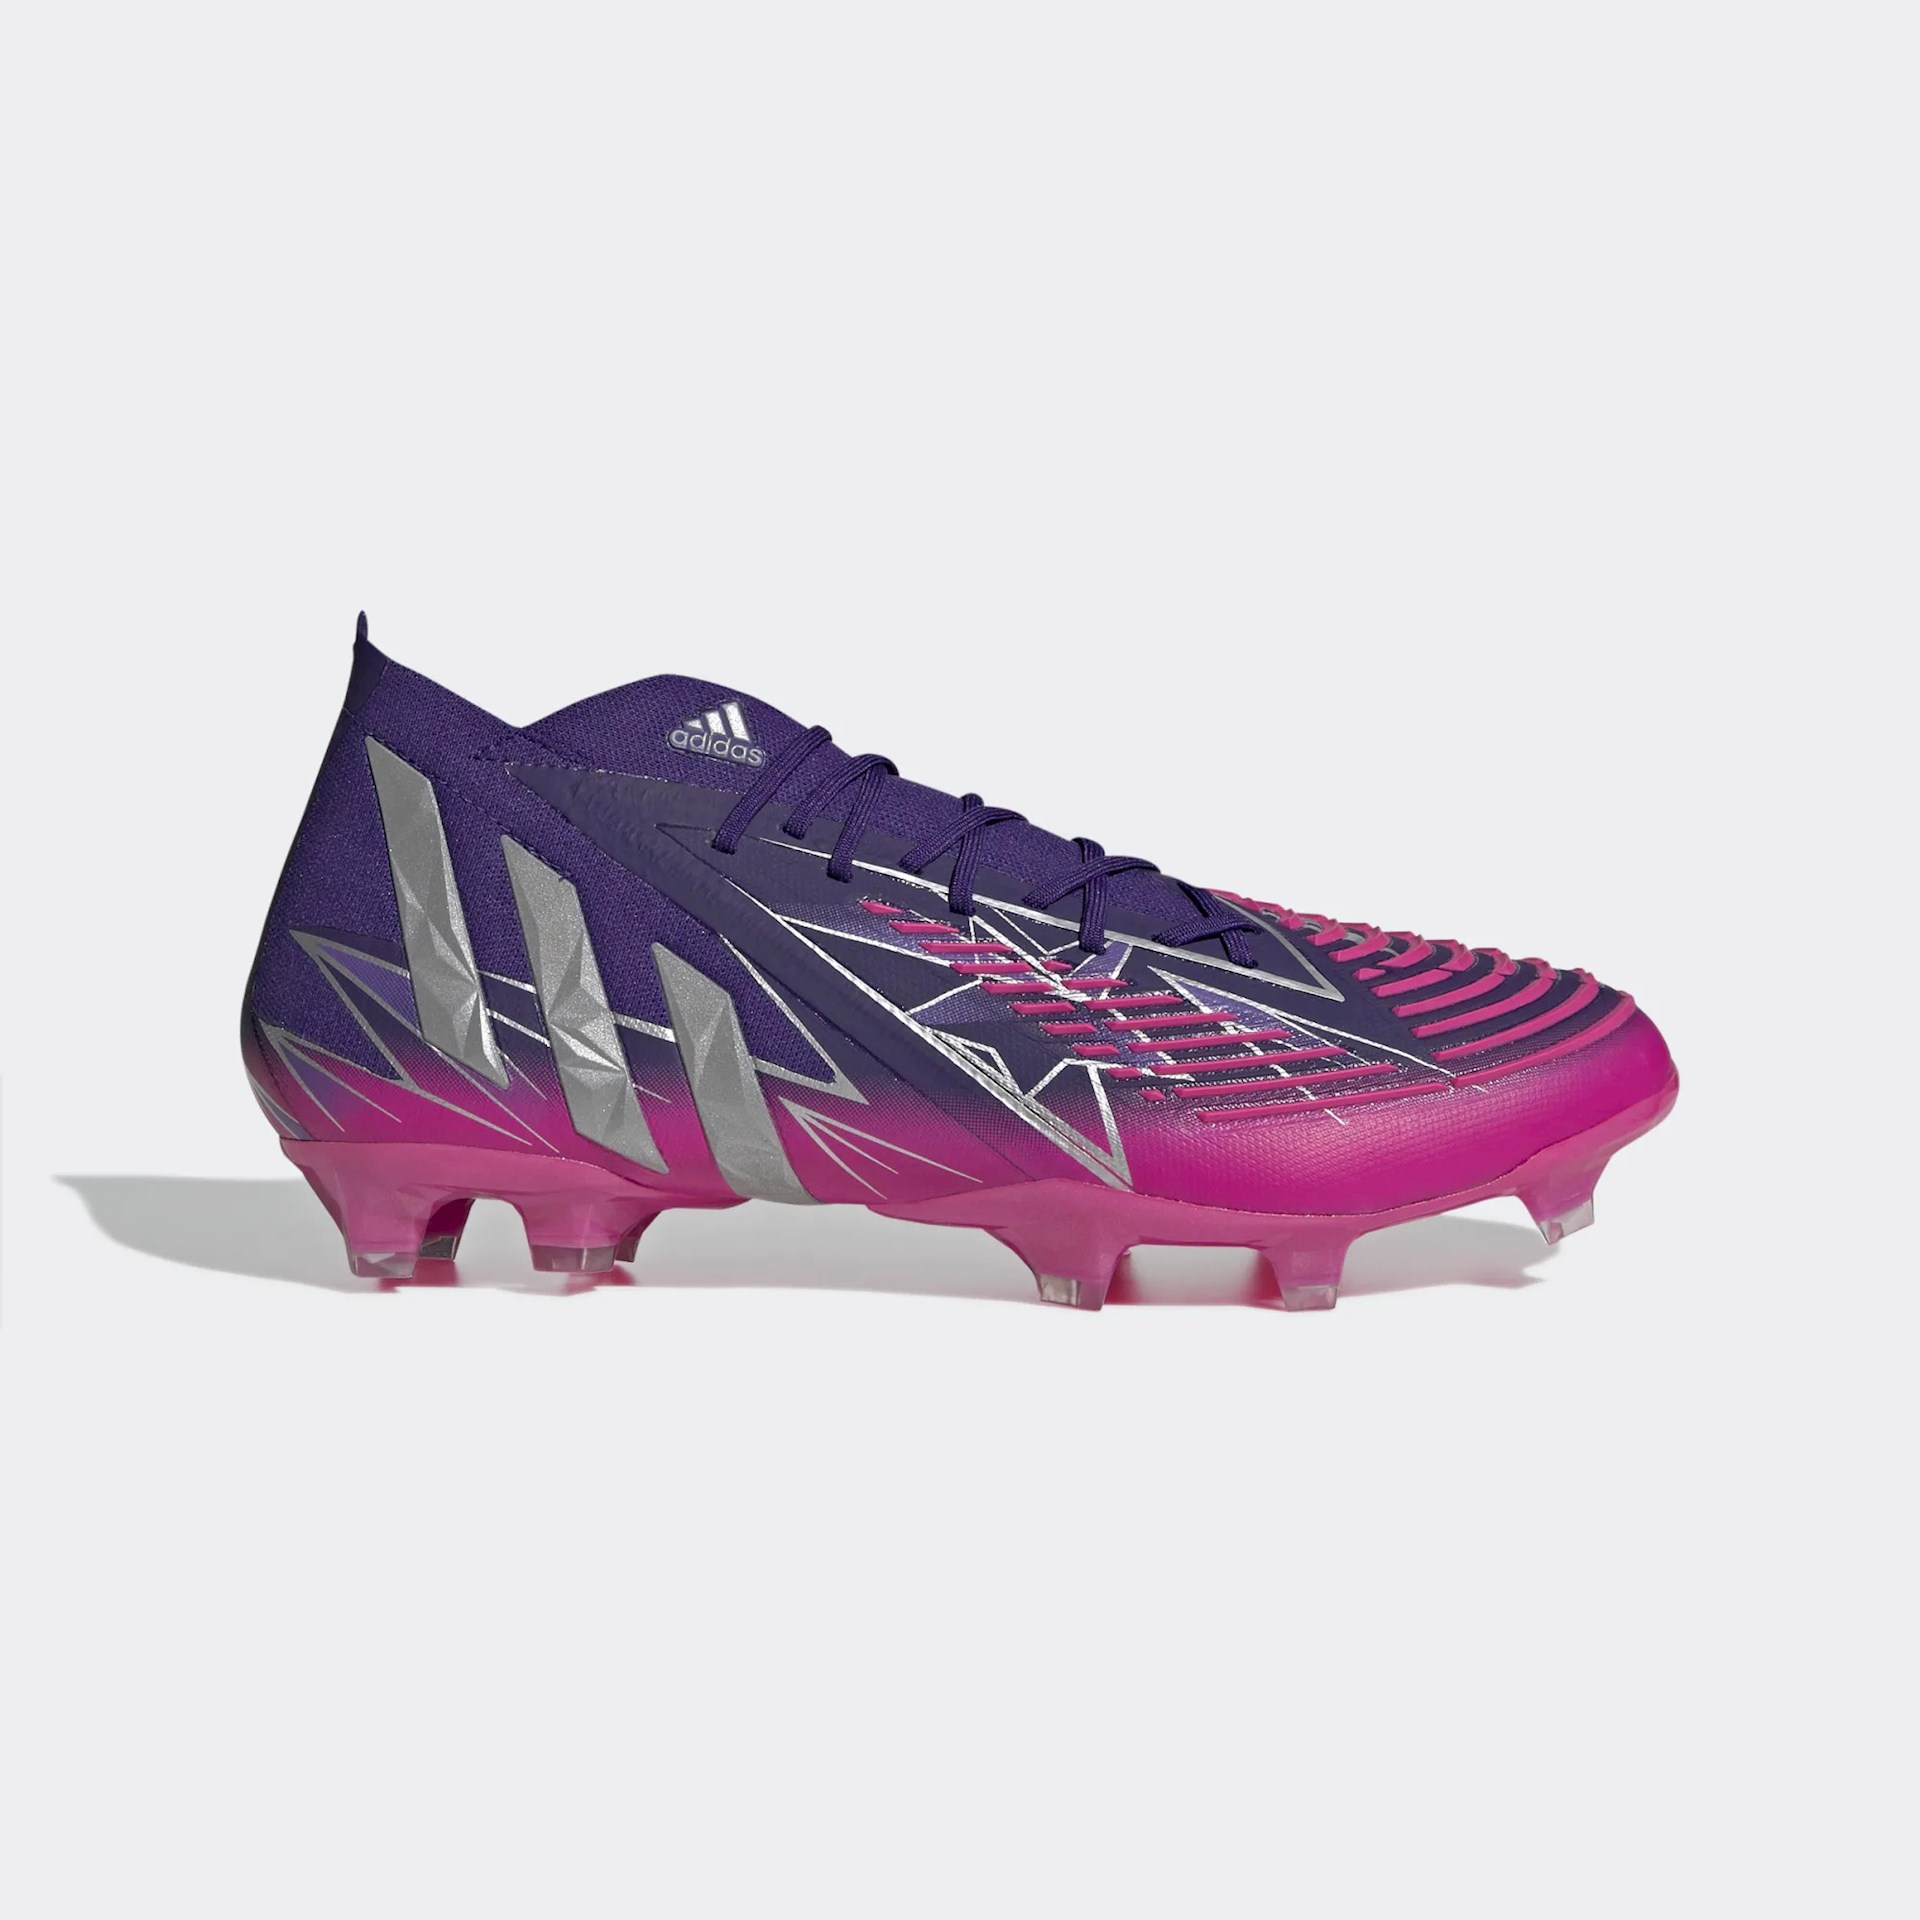 Paars/roze adidas Predator Edge voetbalschoenen met veters